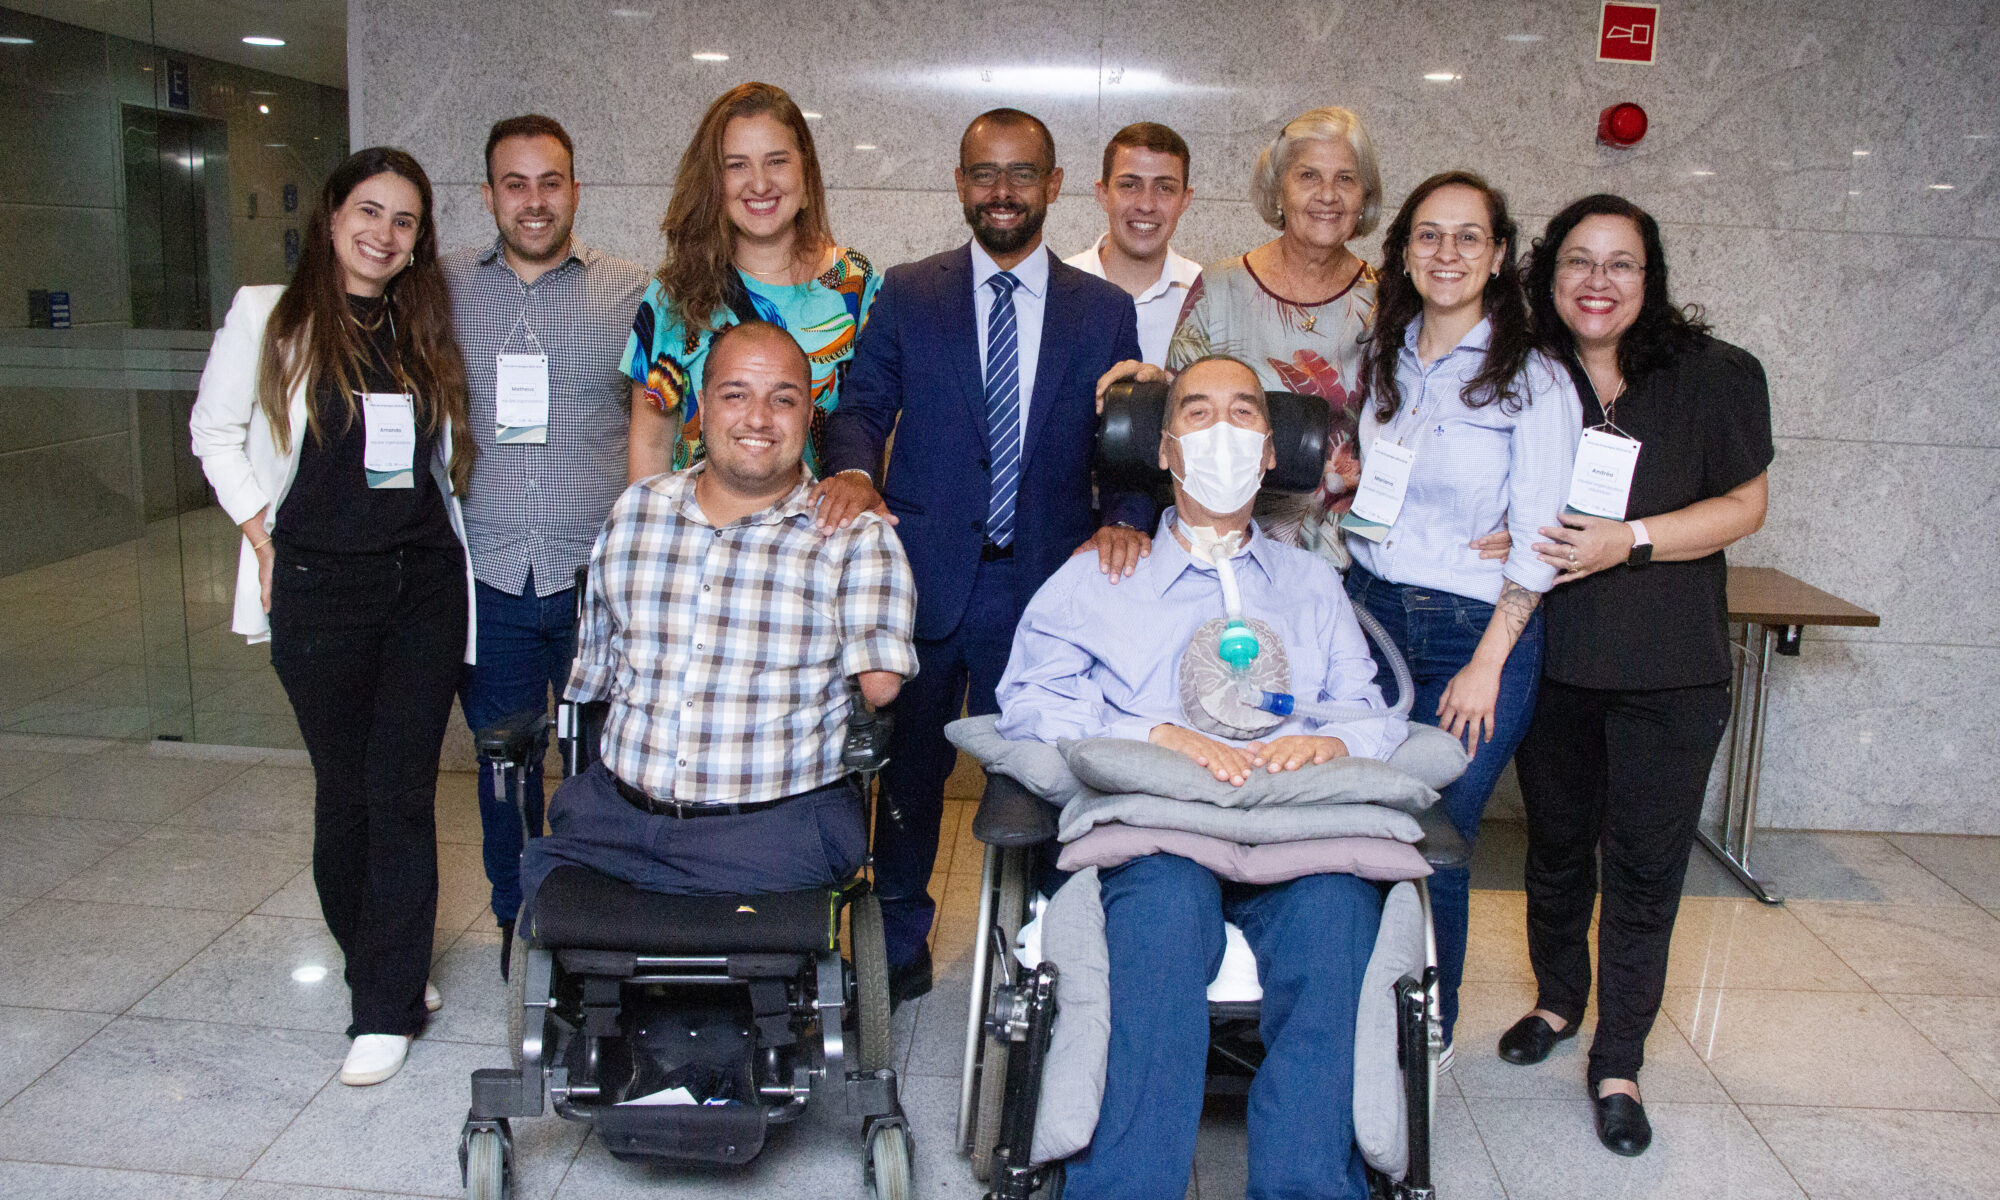 Um grupo de pessoas constituído por 5 mulheres e 5 homens sorrindo. Dois homens estão em cadeiras de rodas. Os Asiders Matheus Garcia e Mariana Oliveira estão neste grupo.